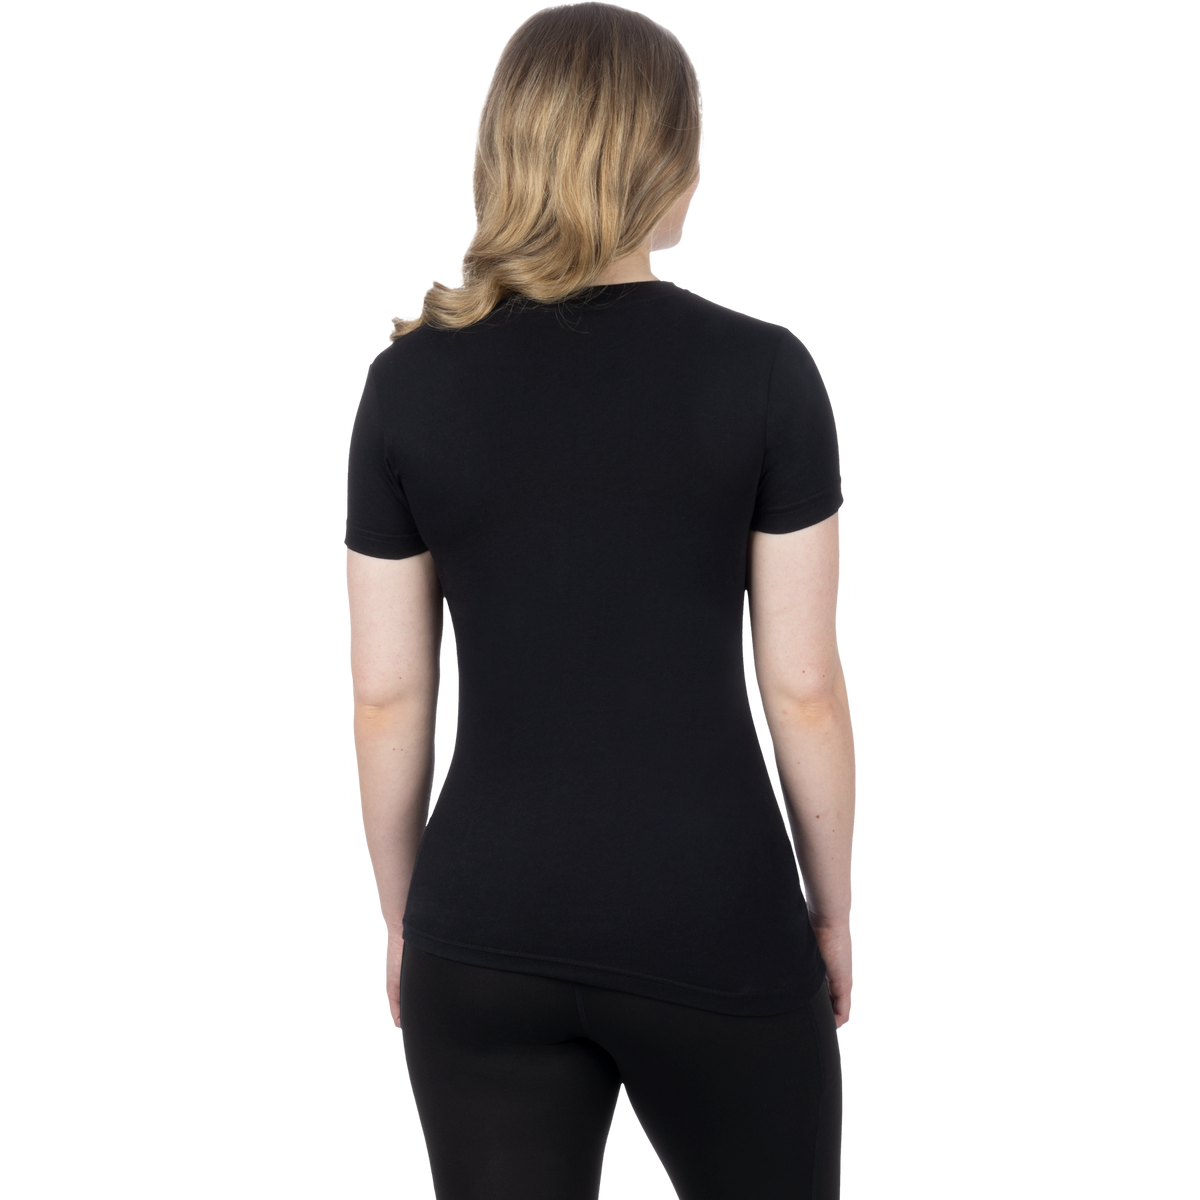 FXR Women&#39;s Helium Premium T-shirt